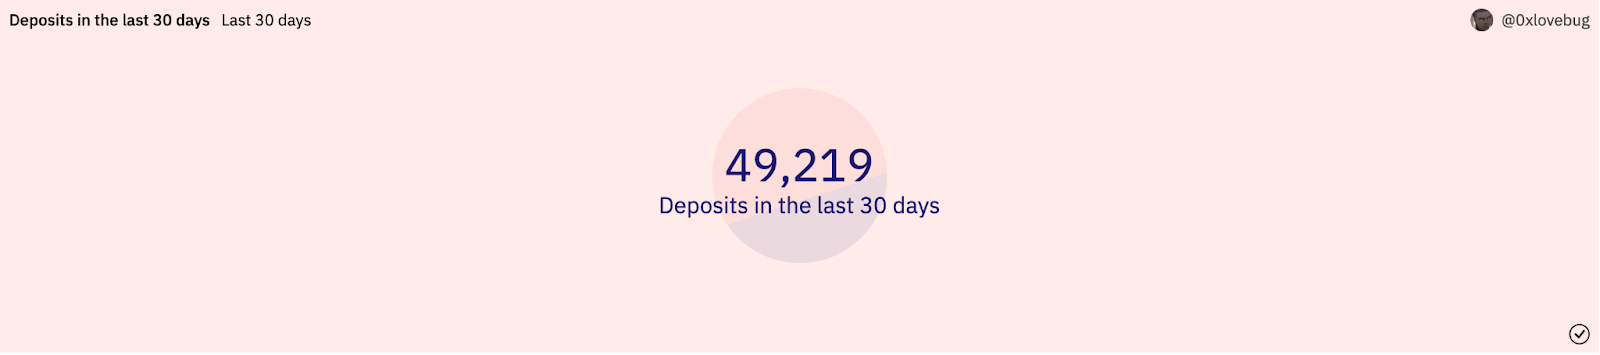 Arbitrum Deposits in the last 30 days